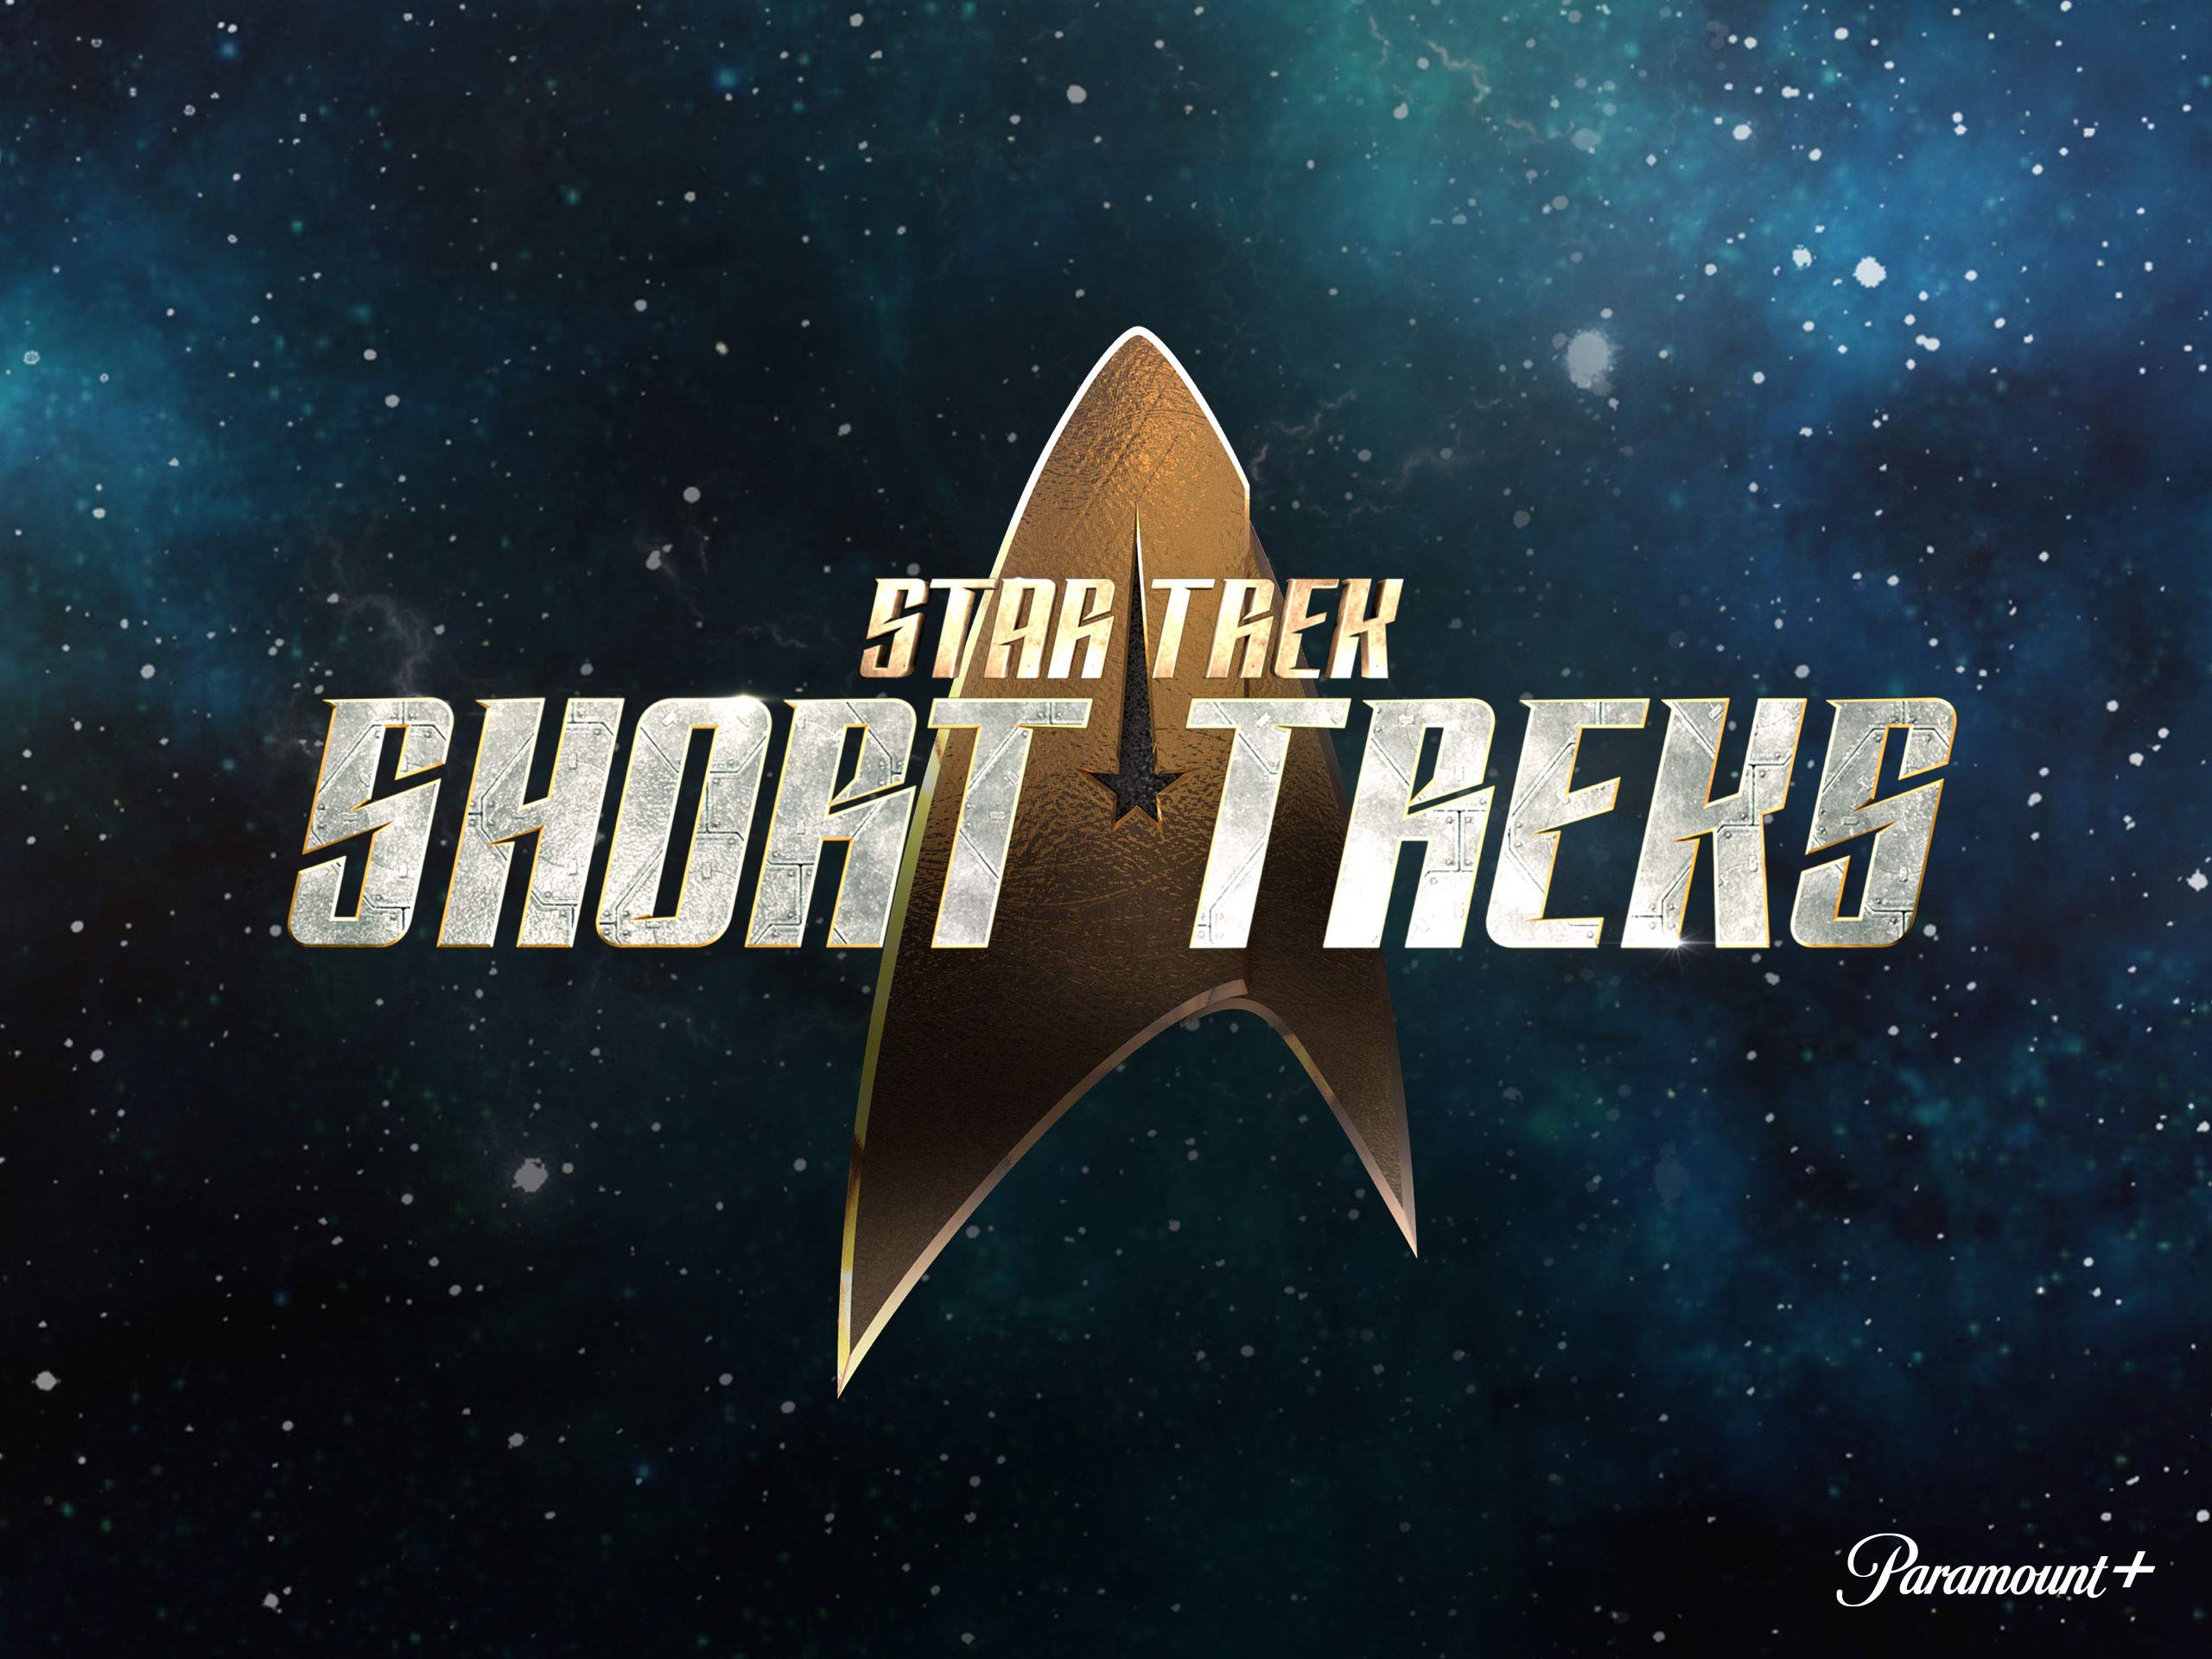 Star Trek: Short Treks on Paramount+